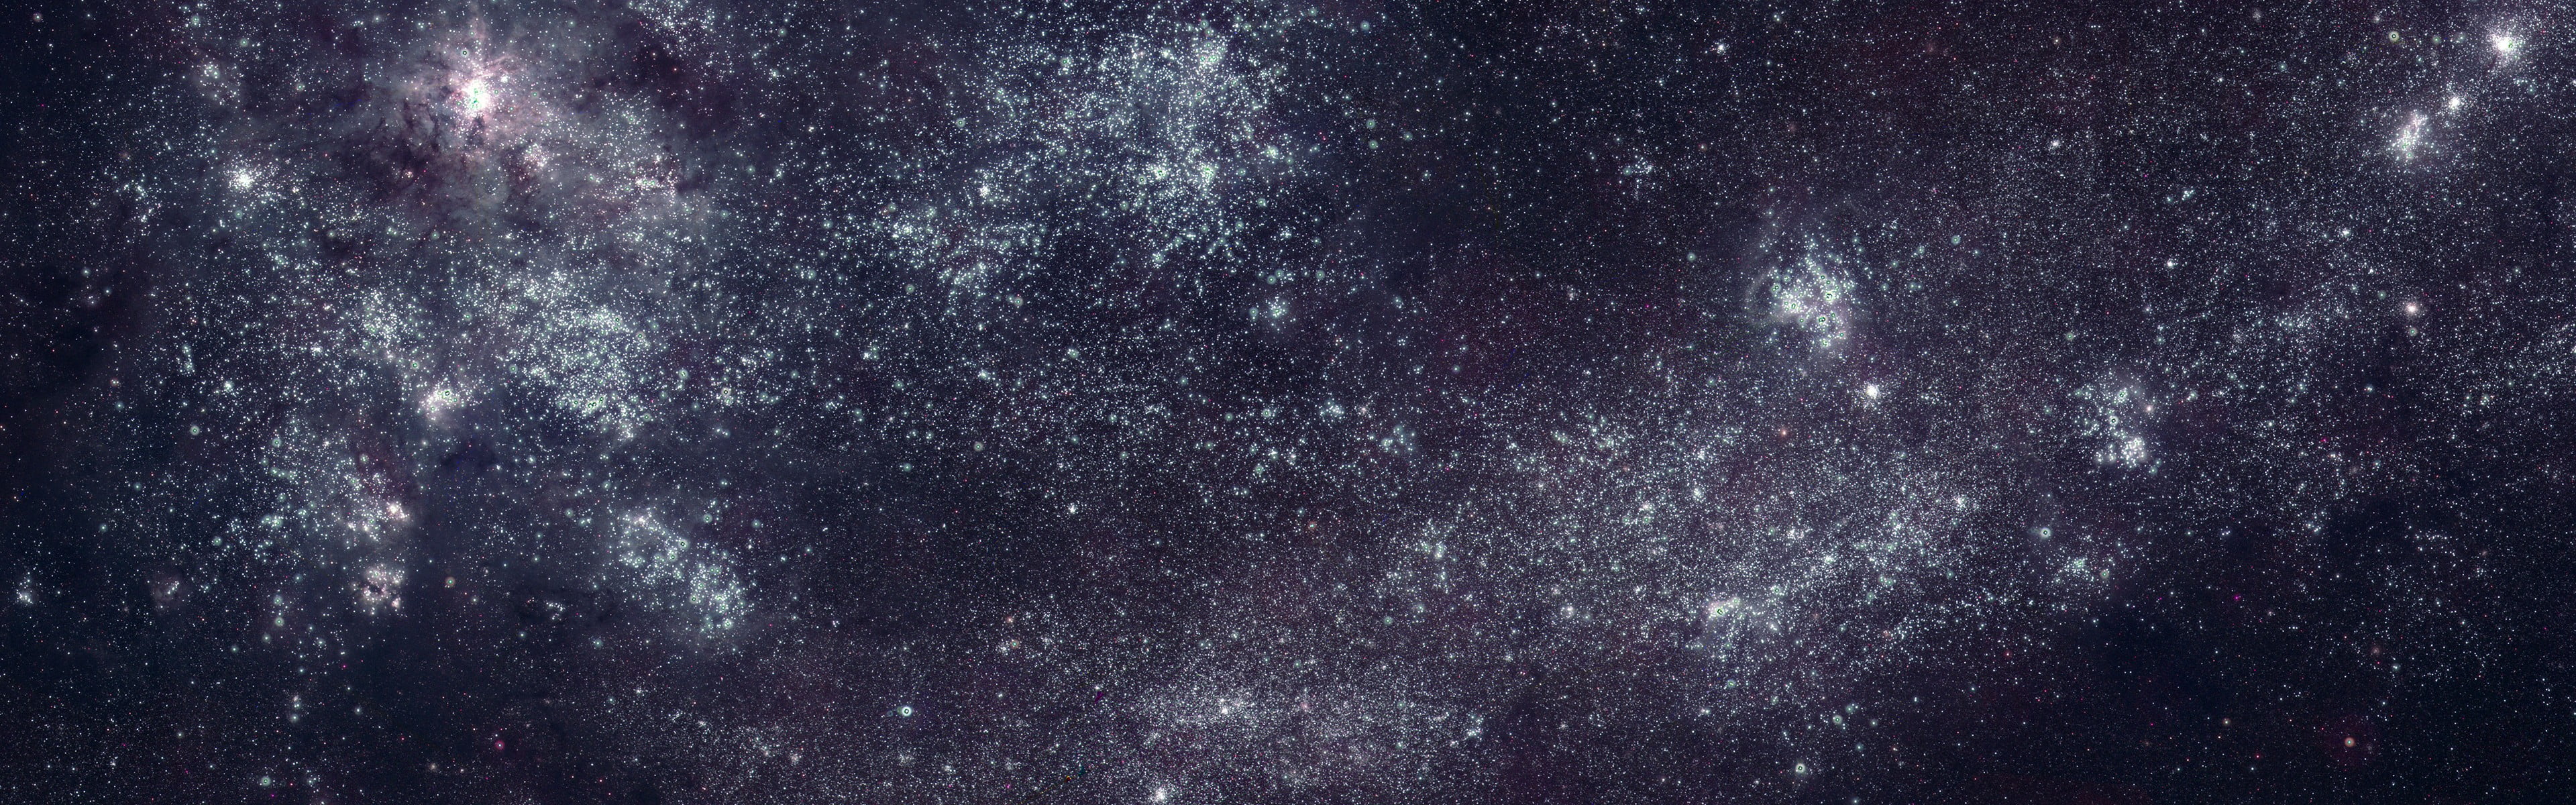 Hình ảnh dải ngân hà luôn là một đề tài hấp dẫn. Tận hưởng những bức ảnh đẹp nhất về dải ngân hà để cảm nhận tất cả những vẻ đẹp của thiên nhiên. Bạn sẽ chứng kiến ​​những khung cảnh đầy mê hoặc cho một chuyến phiêu lưu không tưởng.